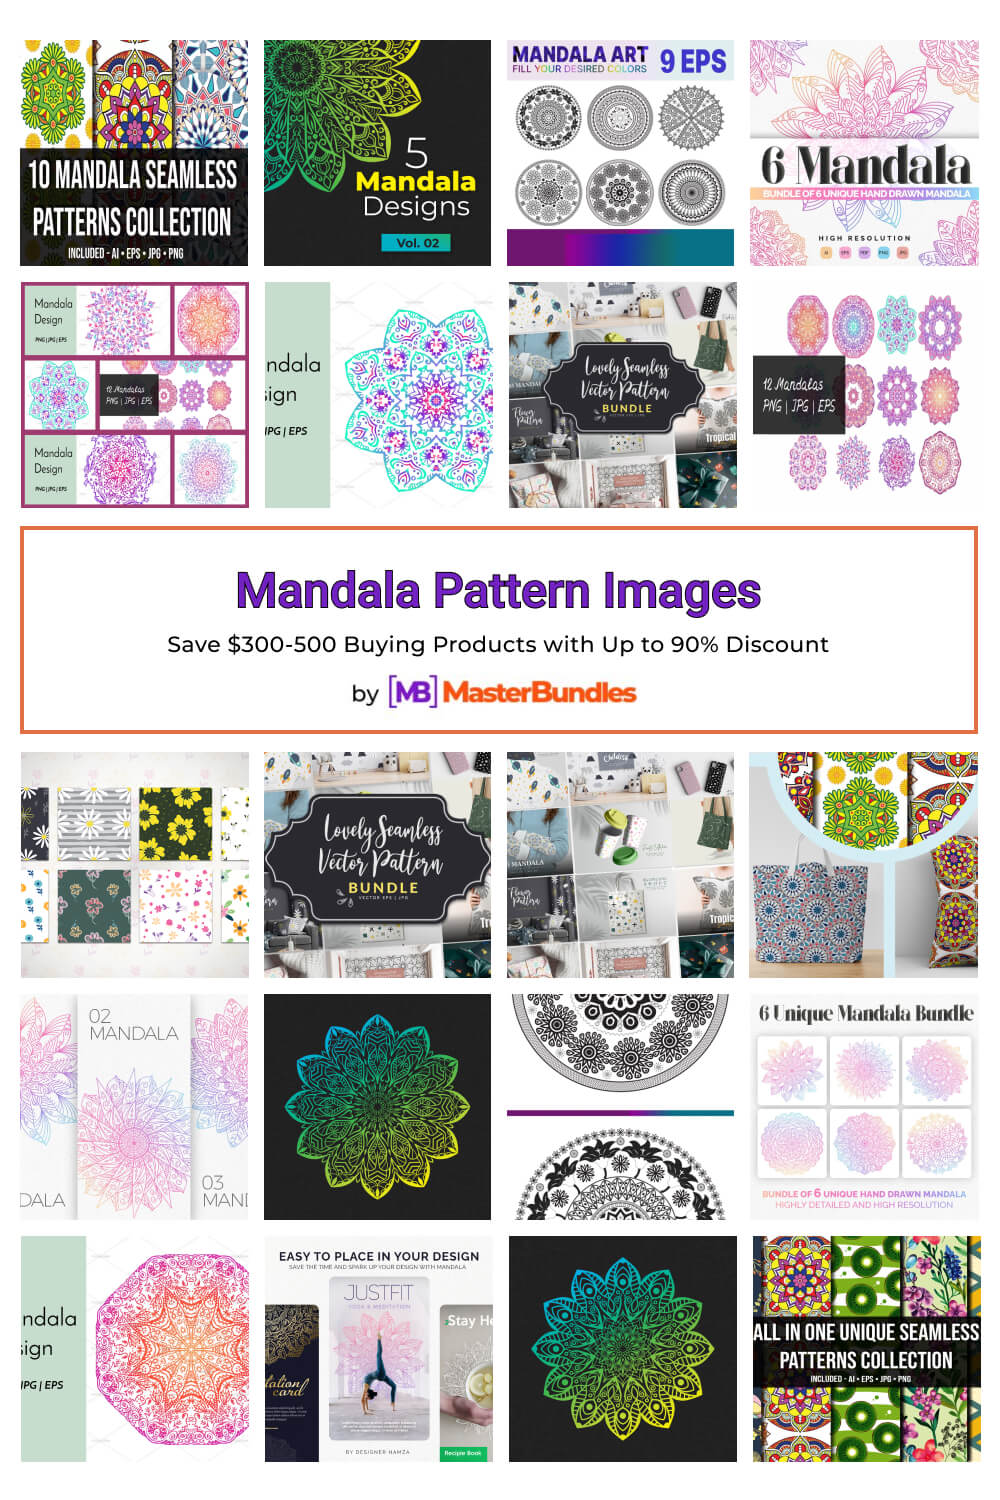 mandala pattern images pinterest image.